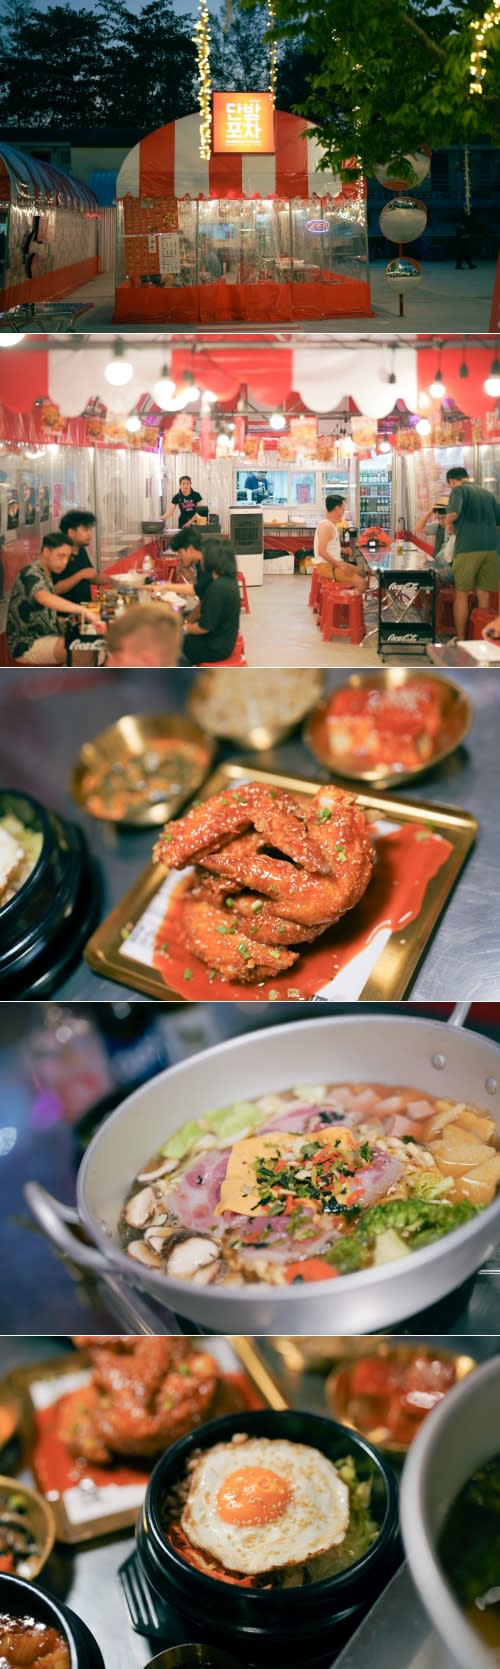 在附近新開的夜市，在韓國風情滿點的布帳馬車裡體驗「泰版韓國料理」。